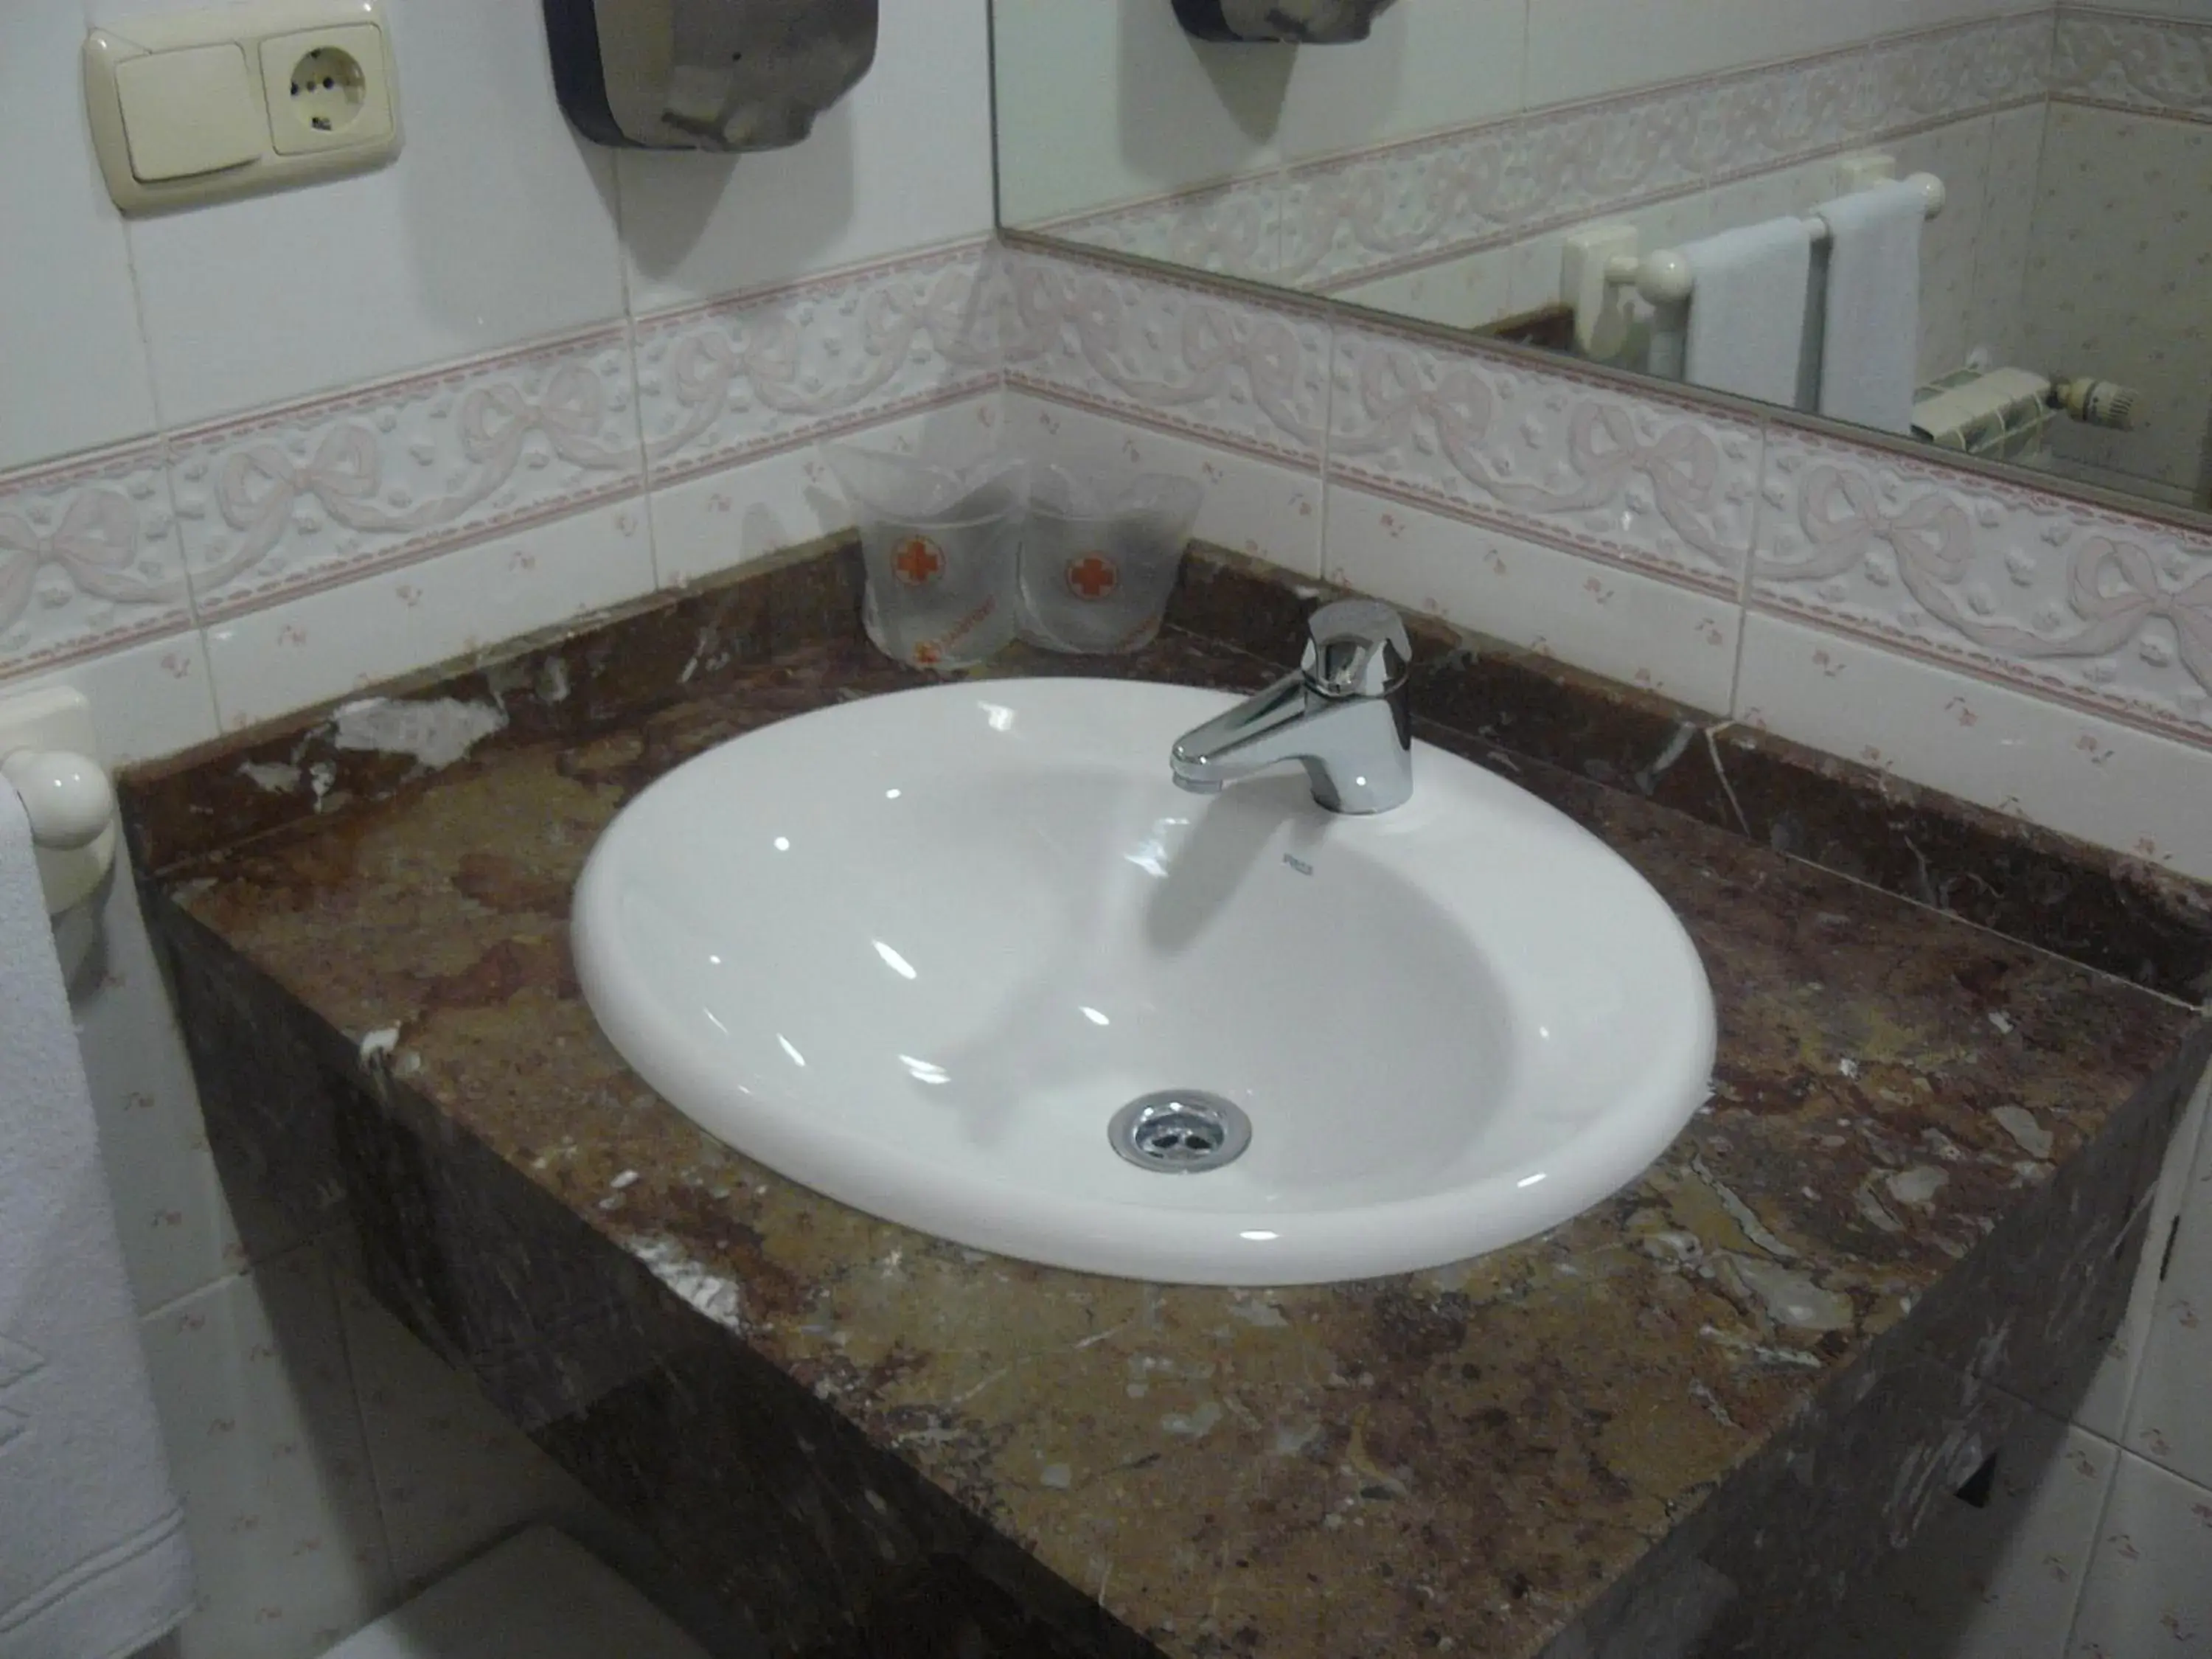 Bathroom in Hotel Aitana